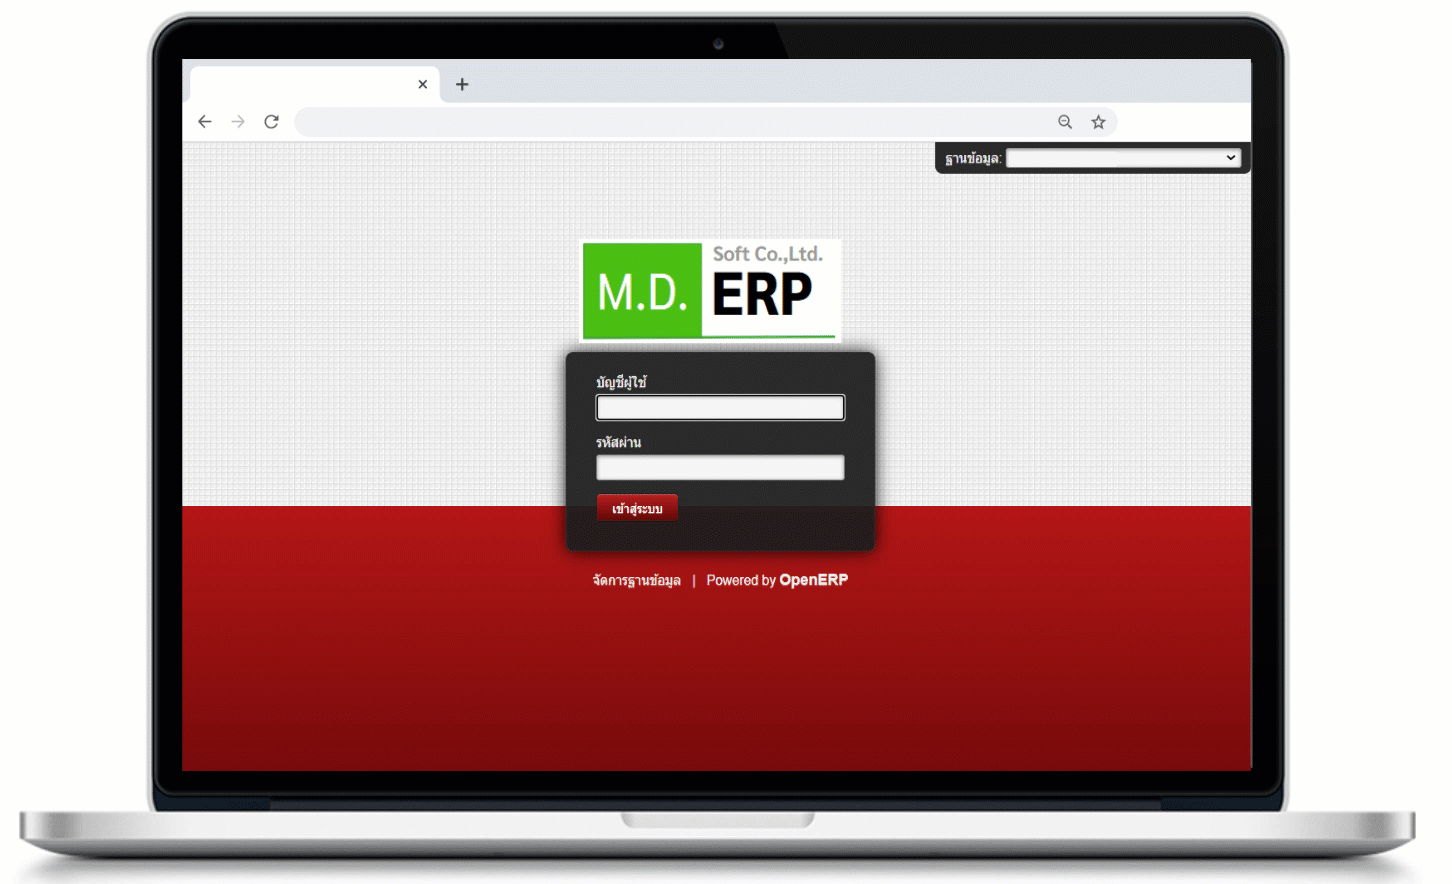 MDSOFT ERP หรือ MDERP ระบบซอฟต์แวร์สำหรับบริหารจัดการธุรกิจอย่างครบวงจร